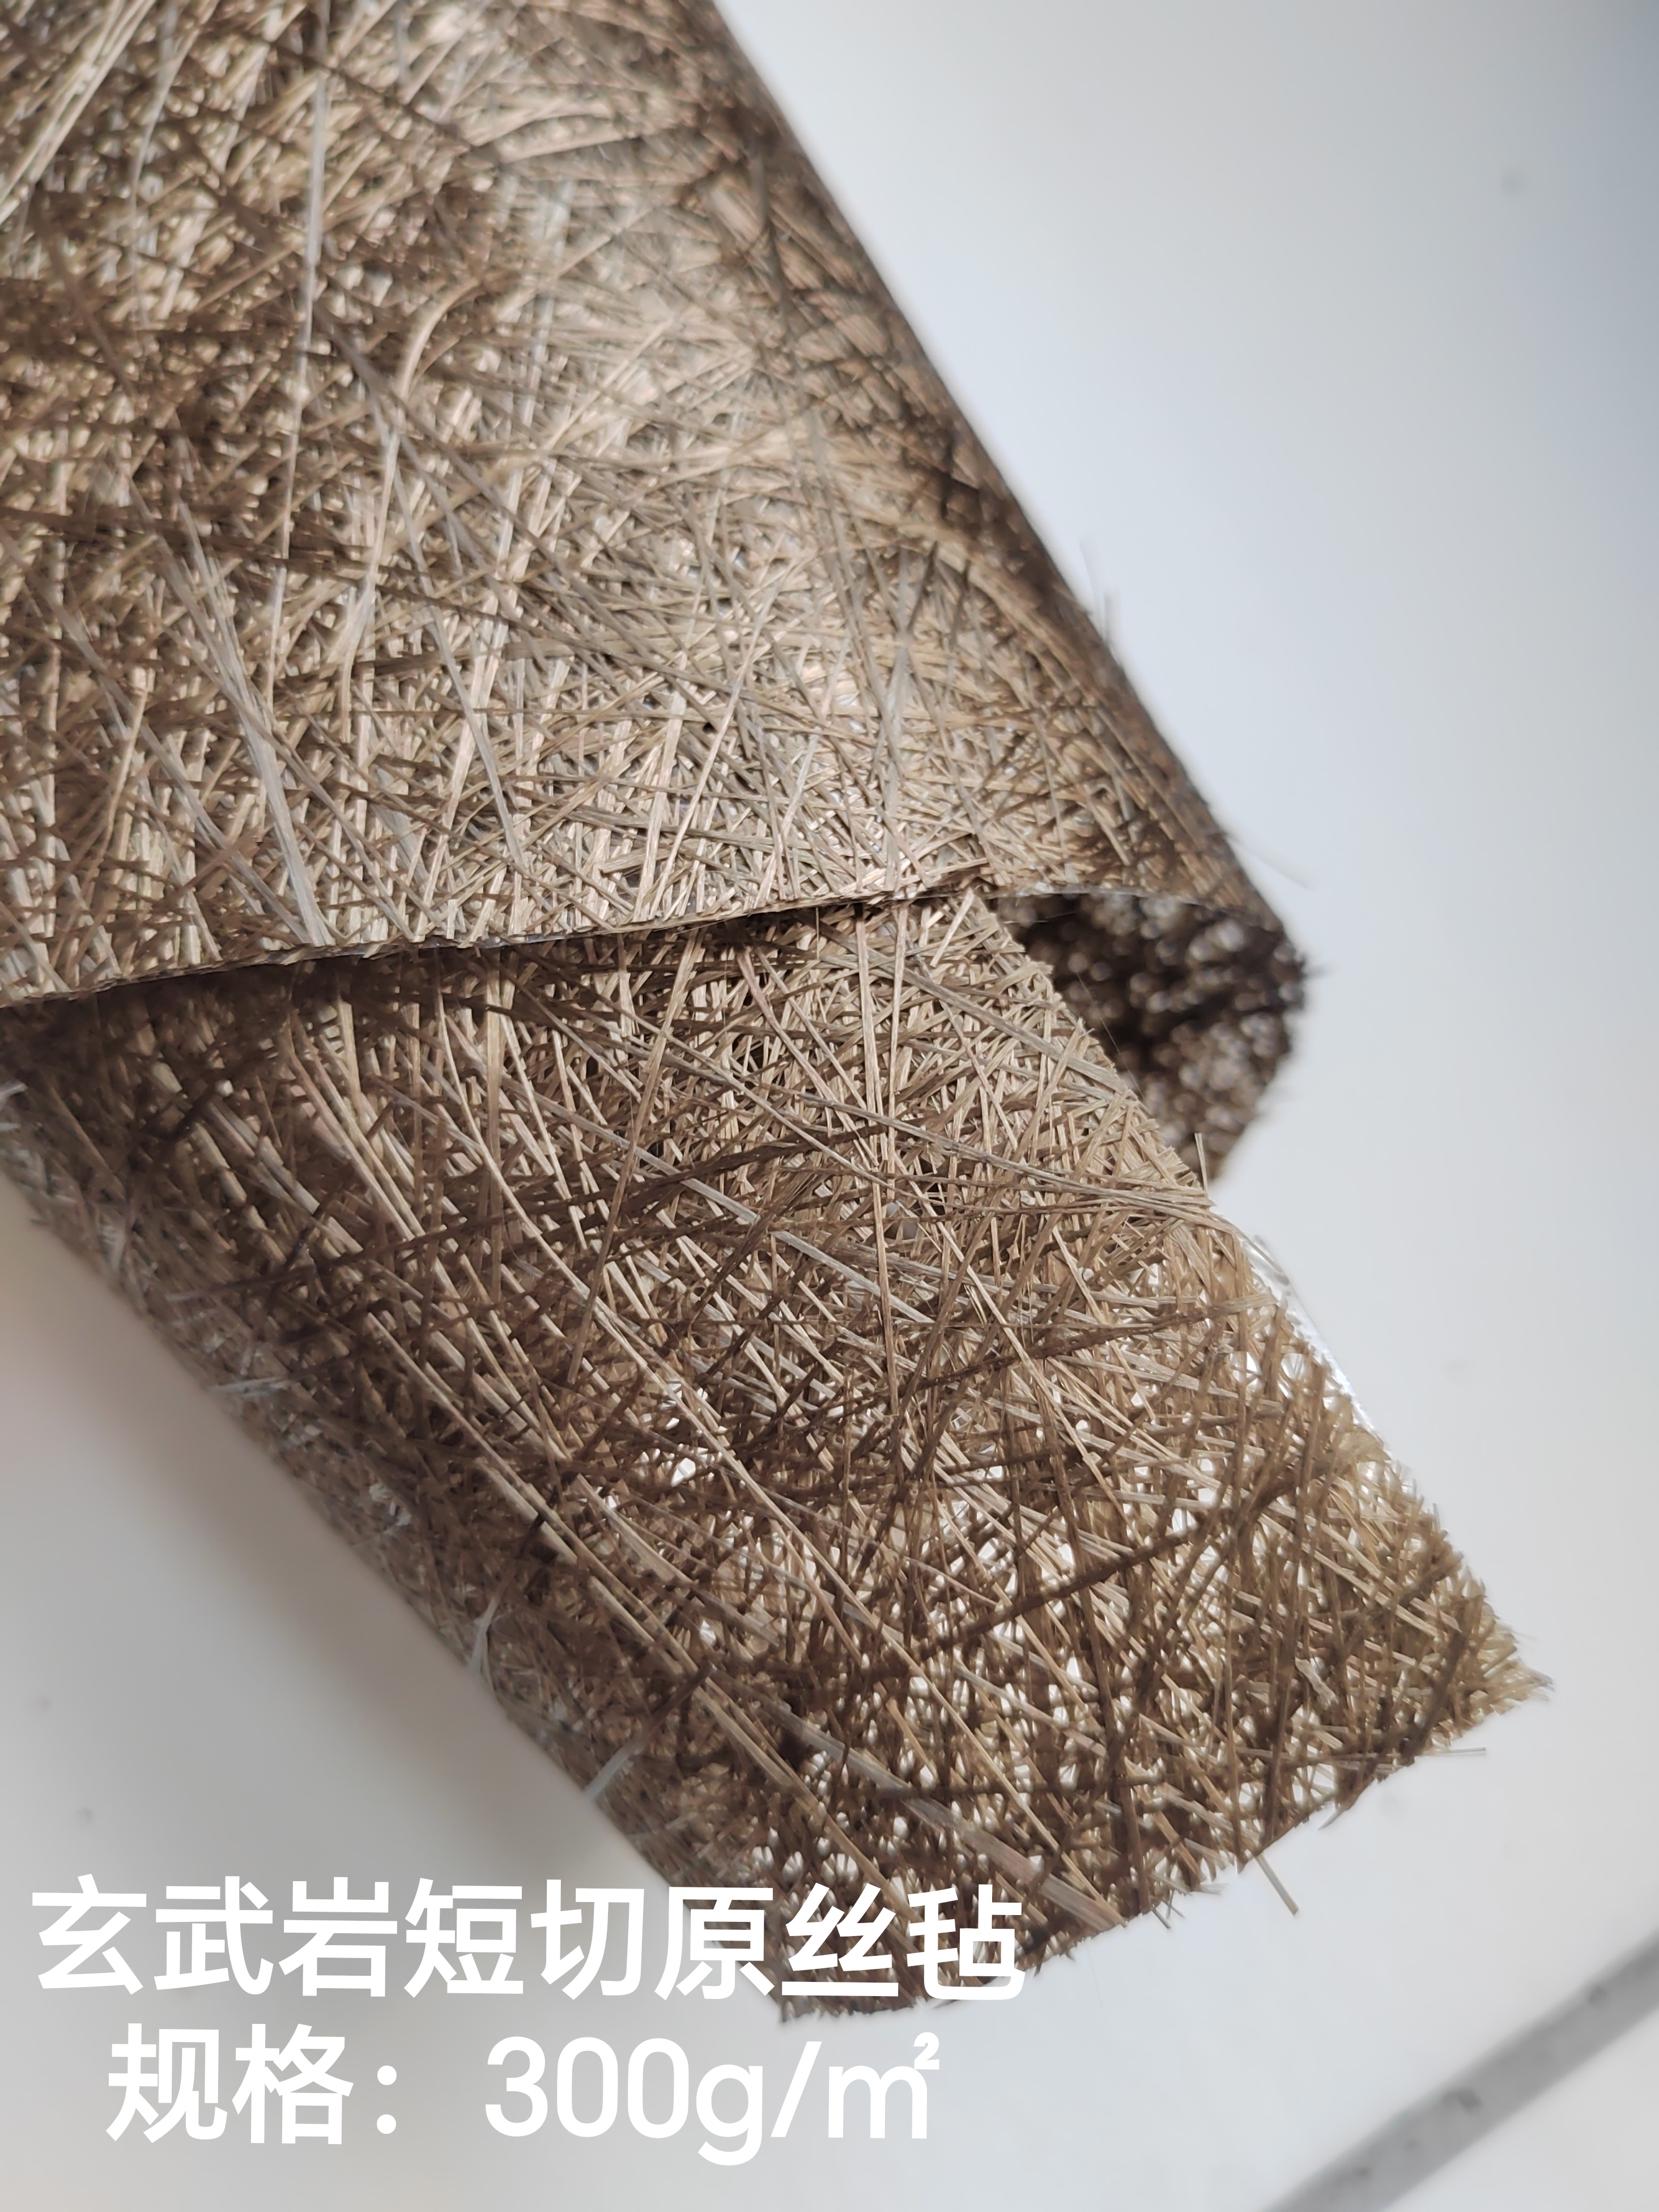 广东供应玄武岩系列制品纤维毡方格布绝缘耐高温材料